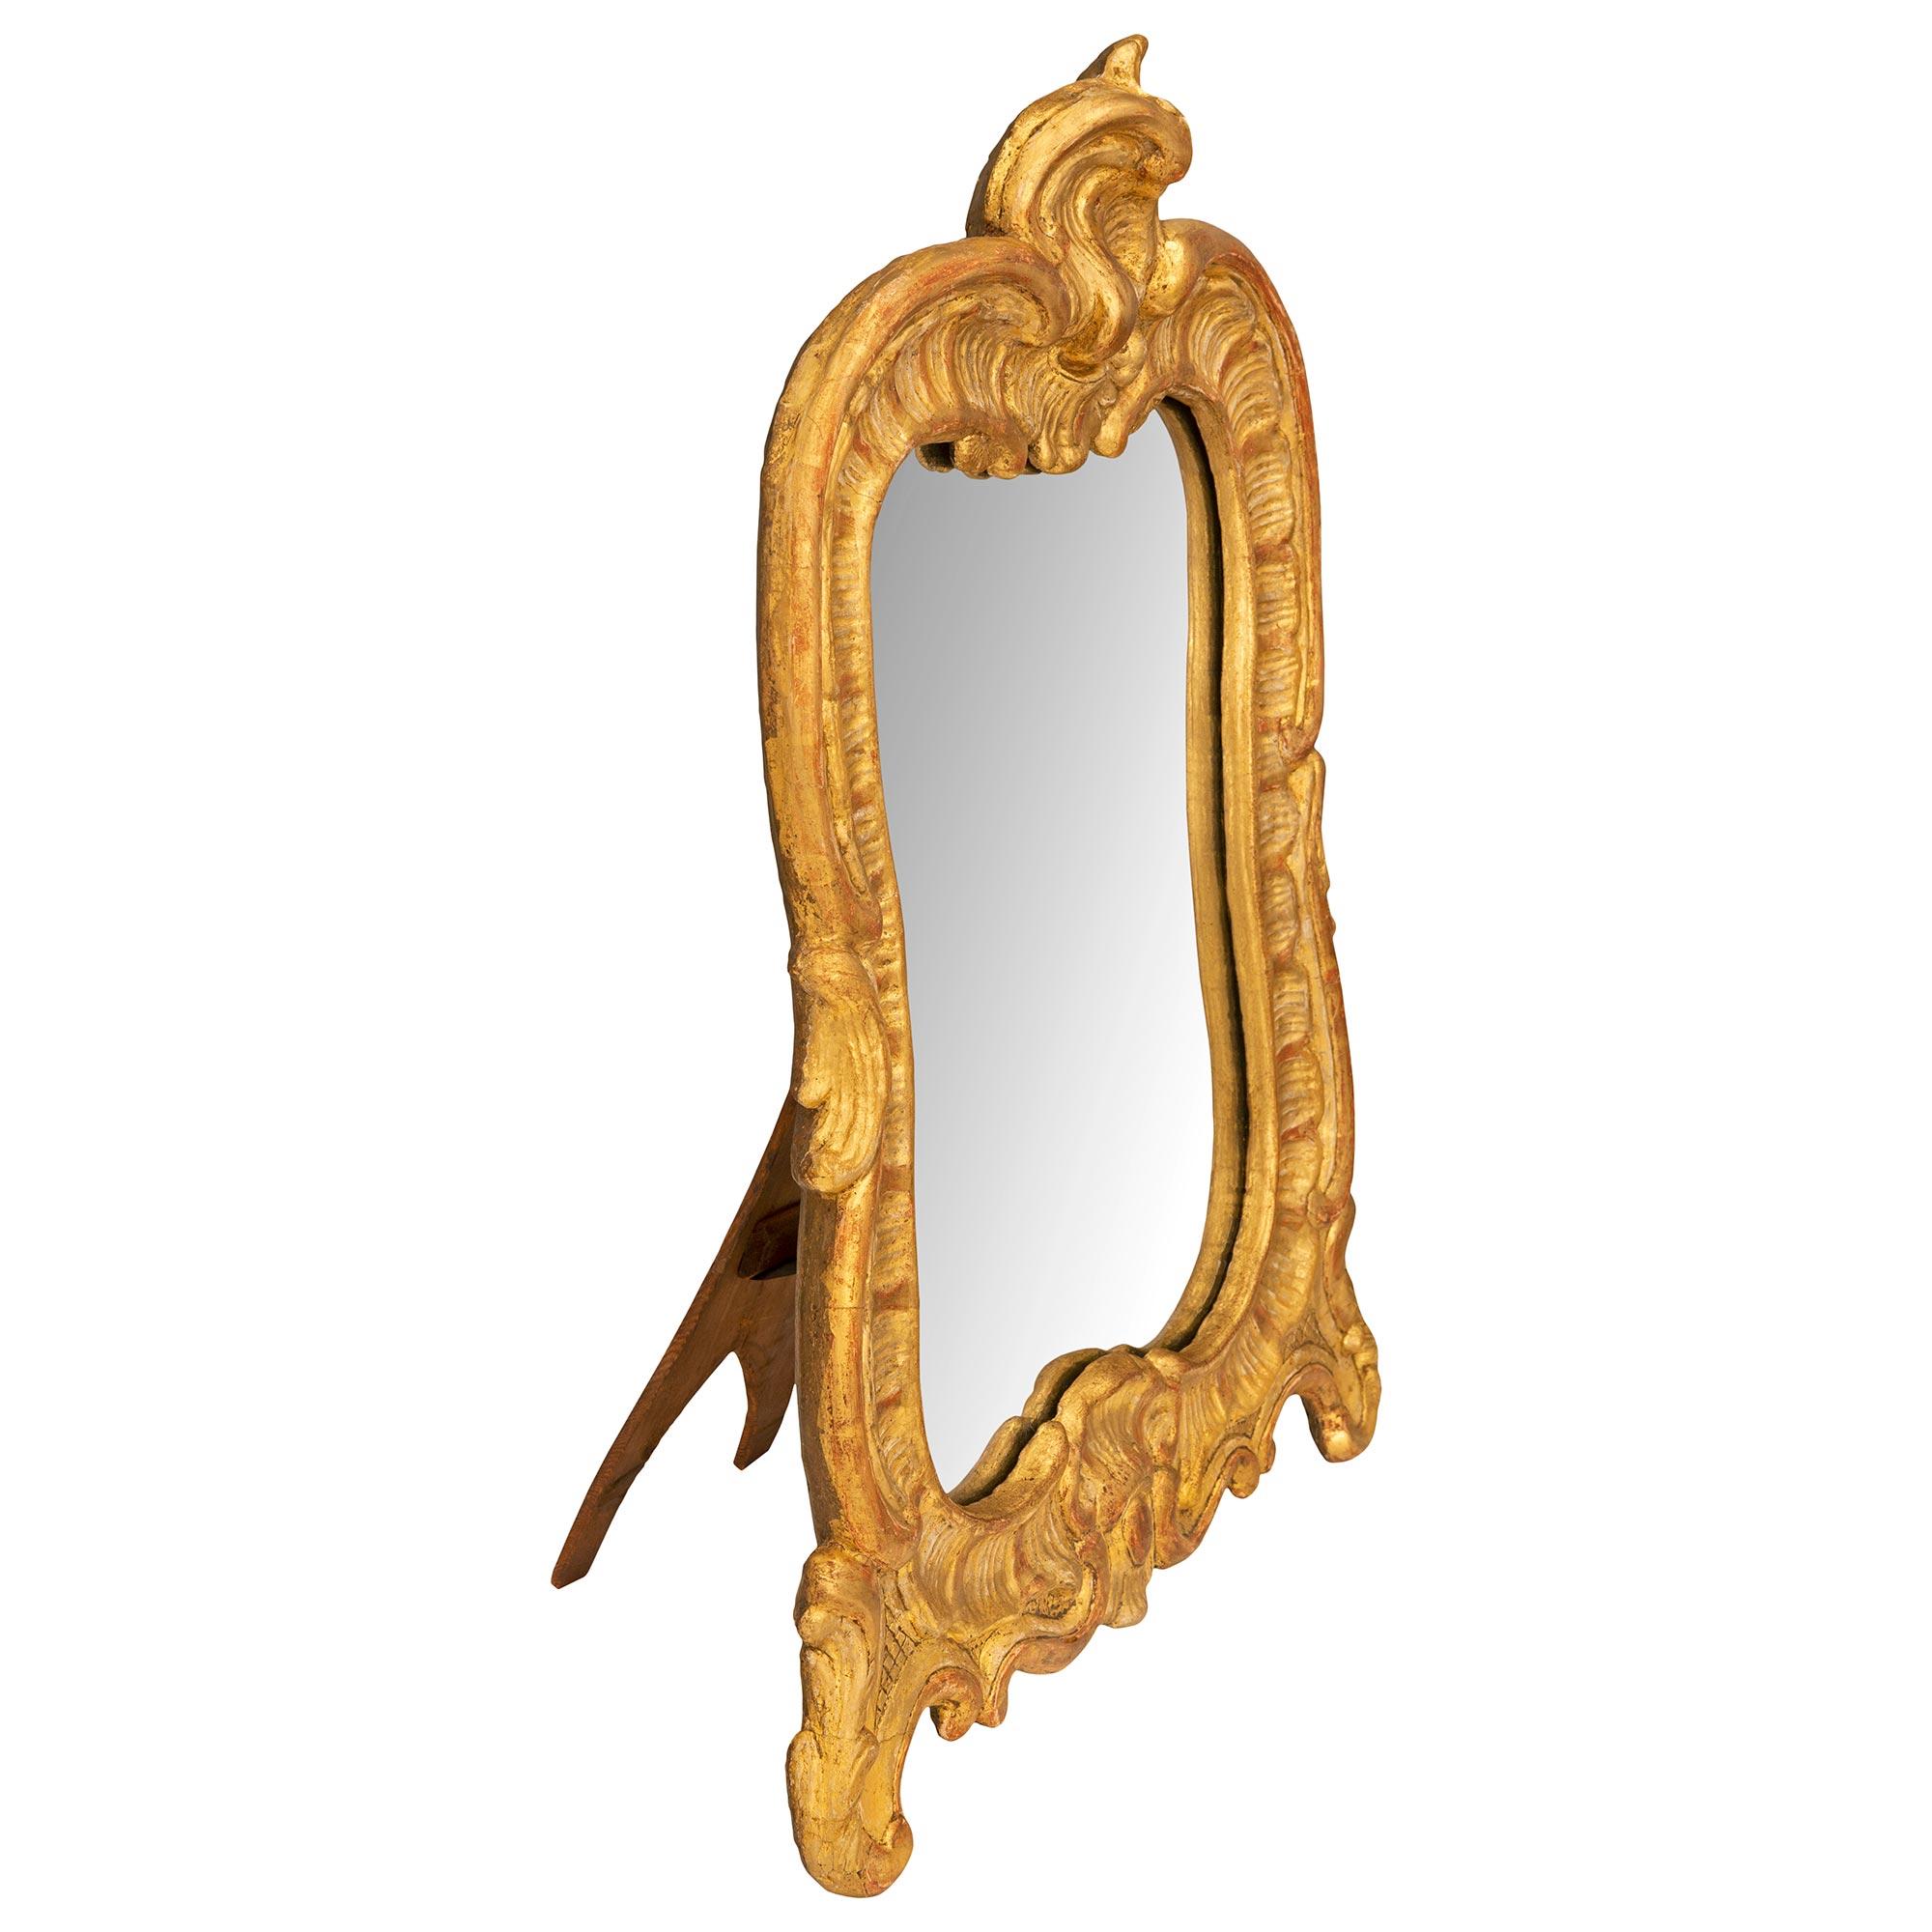 Magnifique miroir de courtoisie en bois doré d'époque Louis XV du XVIIIe siècle. La plaque de miroir est encadrée dans un joli cadre en bois doré festonné, avec de fins pieds à volutes décorés d'étonnants motifs de treillis centrant une réserve de